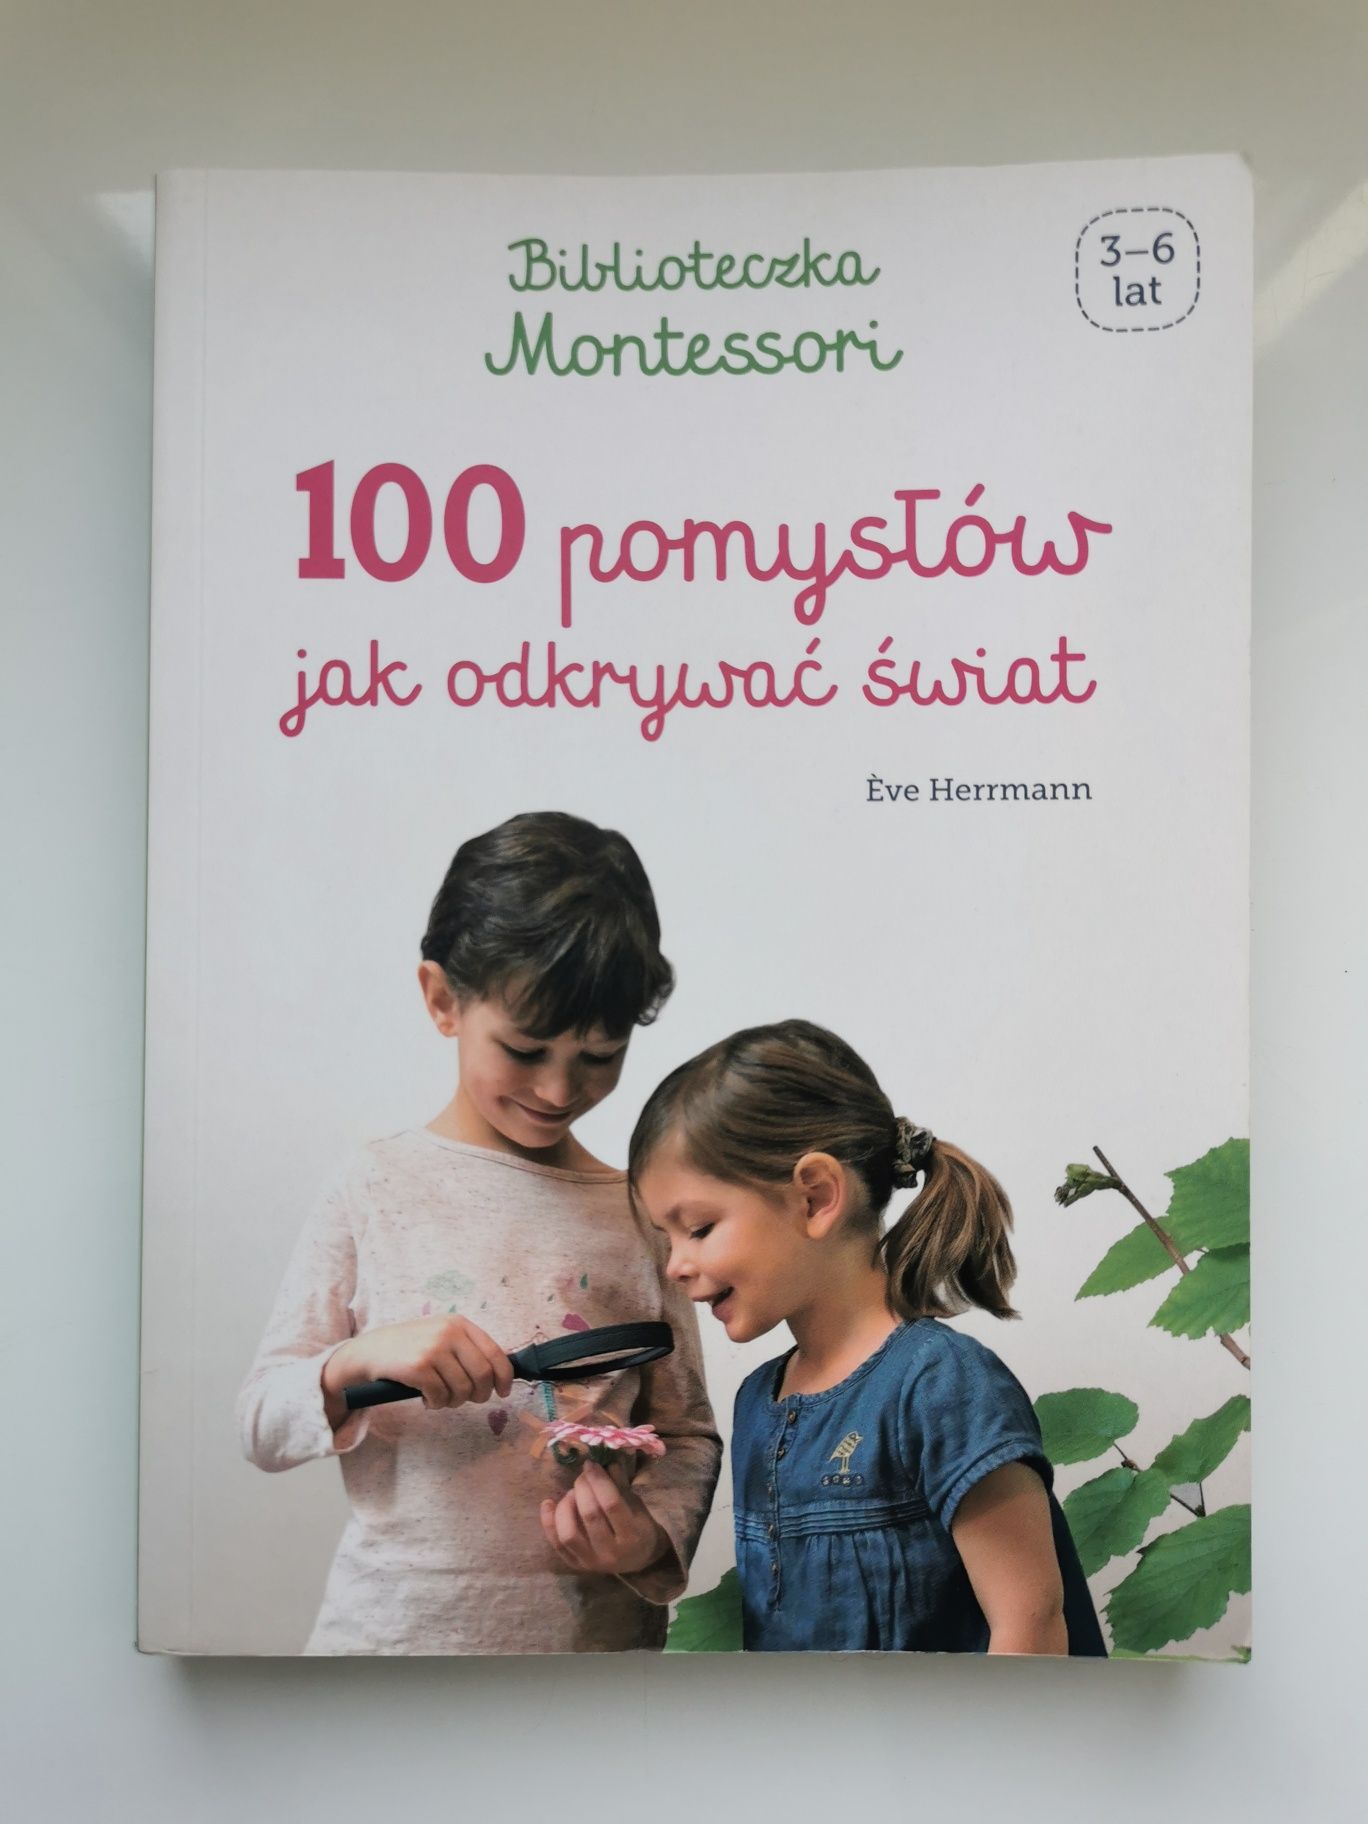 100 pomysłów jak odkrywać świat Biblioteczka Montessori Eve Herrmann